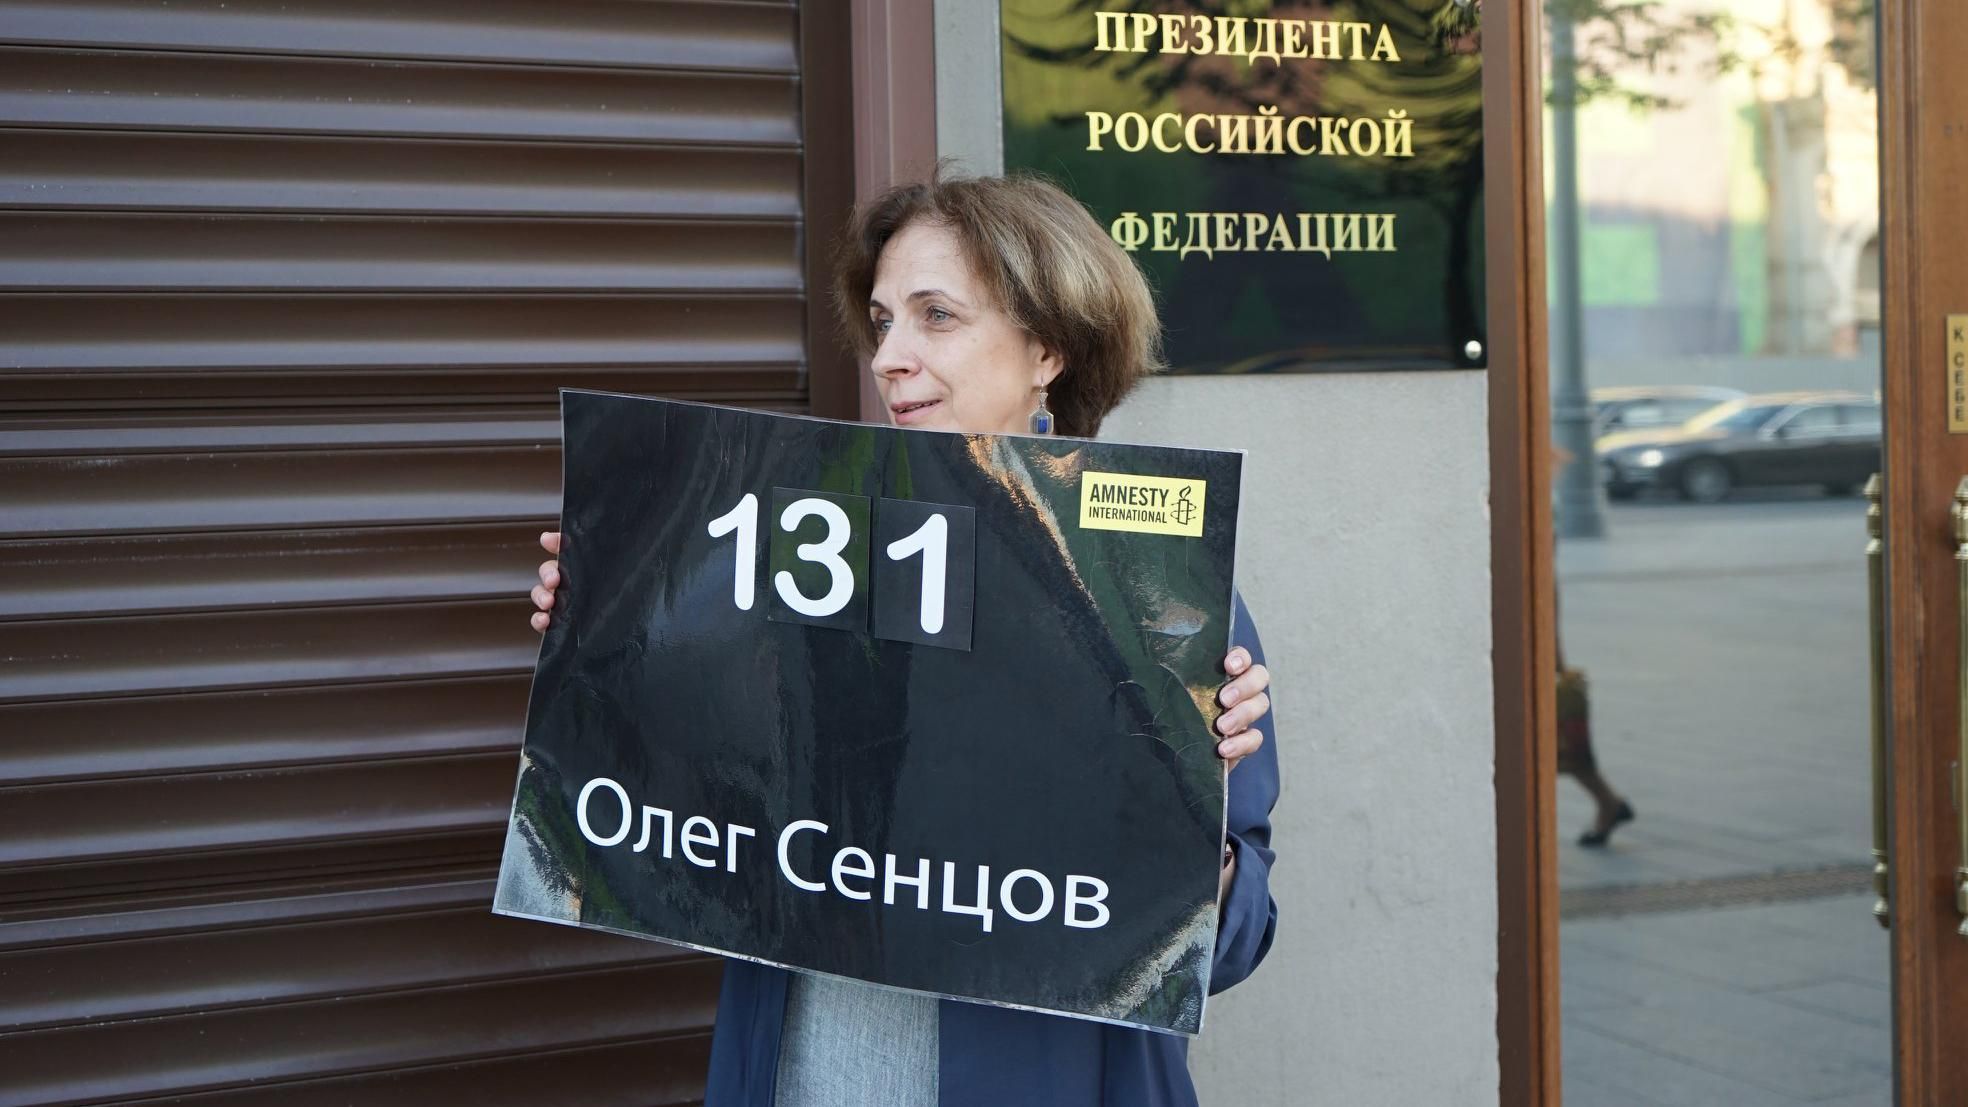 Под администрацией Путина российская активистка провела одиночный пикет в поддержку Сенцова